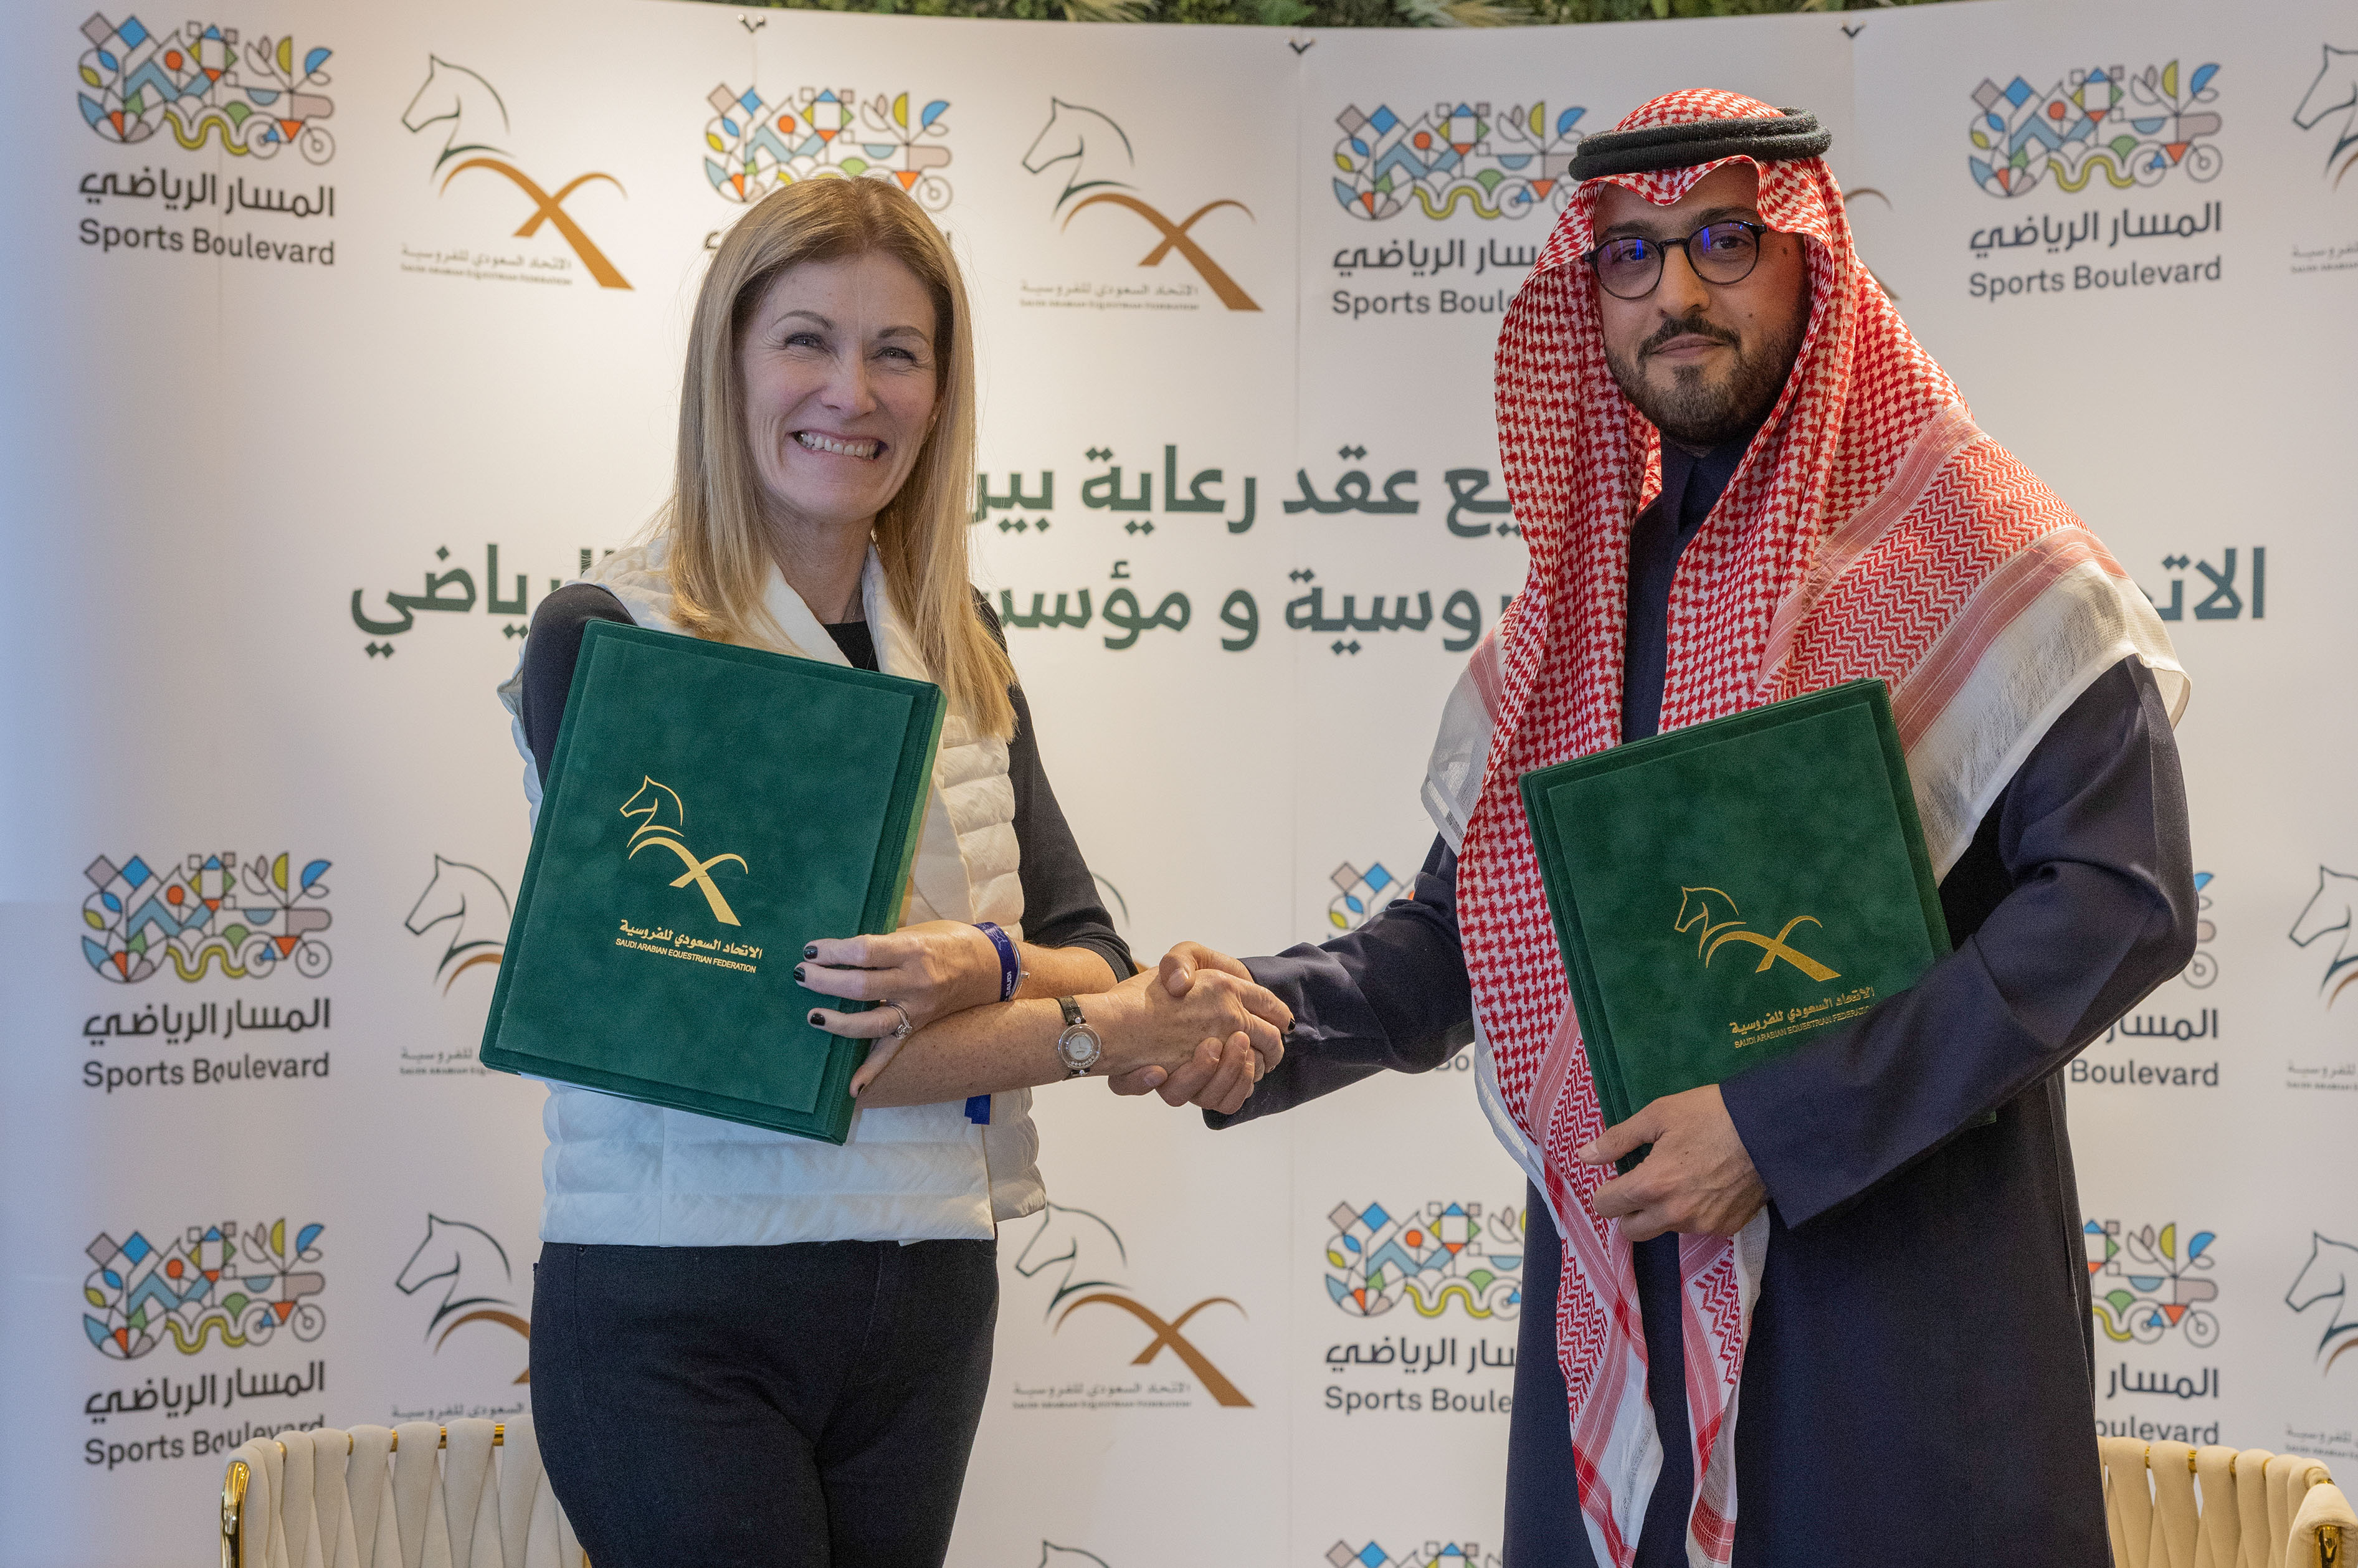 وقعت مؤسسة المسار الرياضي اتفاقية مع الاتحاد السعودي للفروسية، ليصبح المسار الرياضي شريكًا رياضيًا رسميًا لبطولات موسم 2022-2023. وجرى التوقيع ب